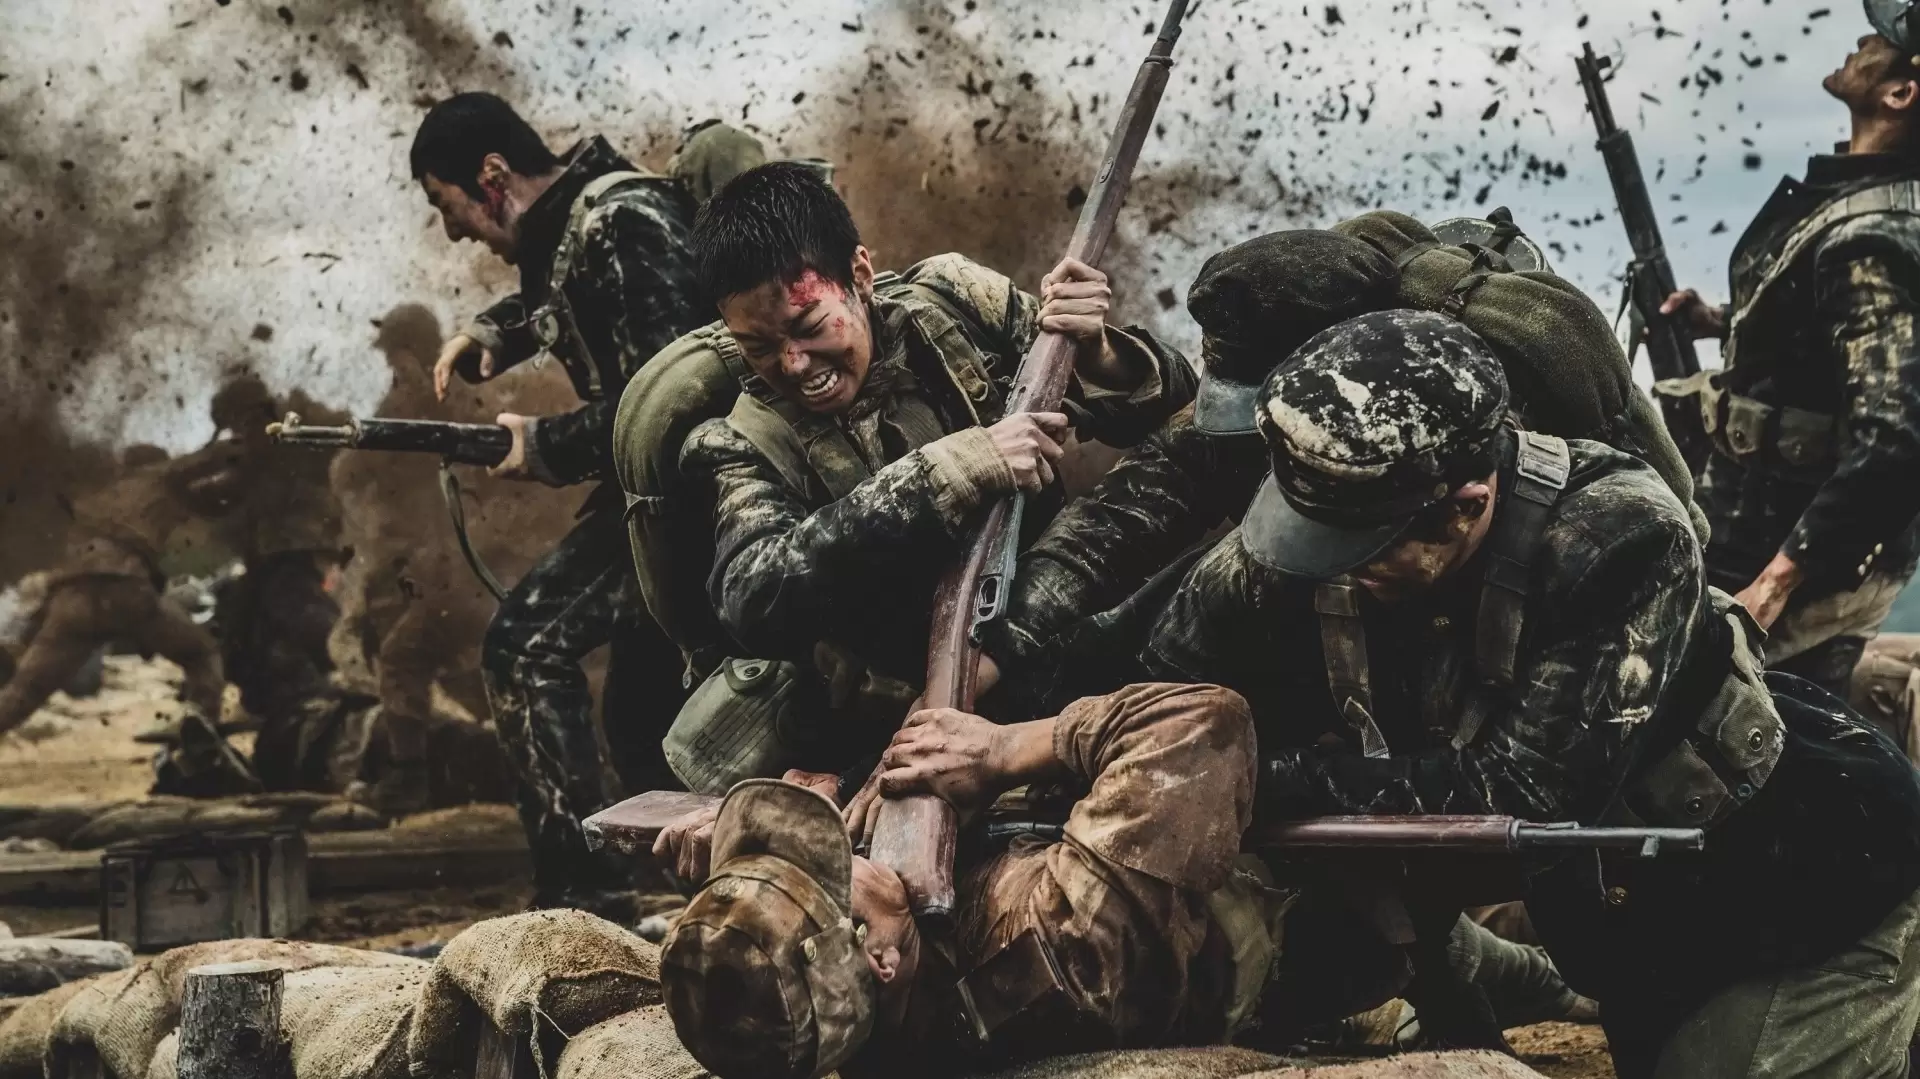 دانلود فیلم The Battle of Jangsari 2019 (نبرد جنگساری) با زیرنویس فارسی و تماشای آنلاین